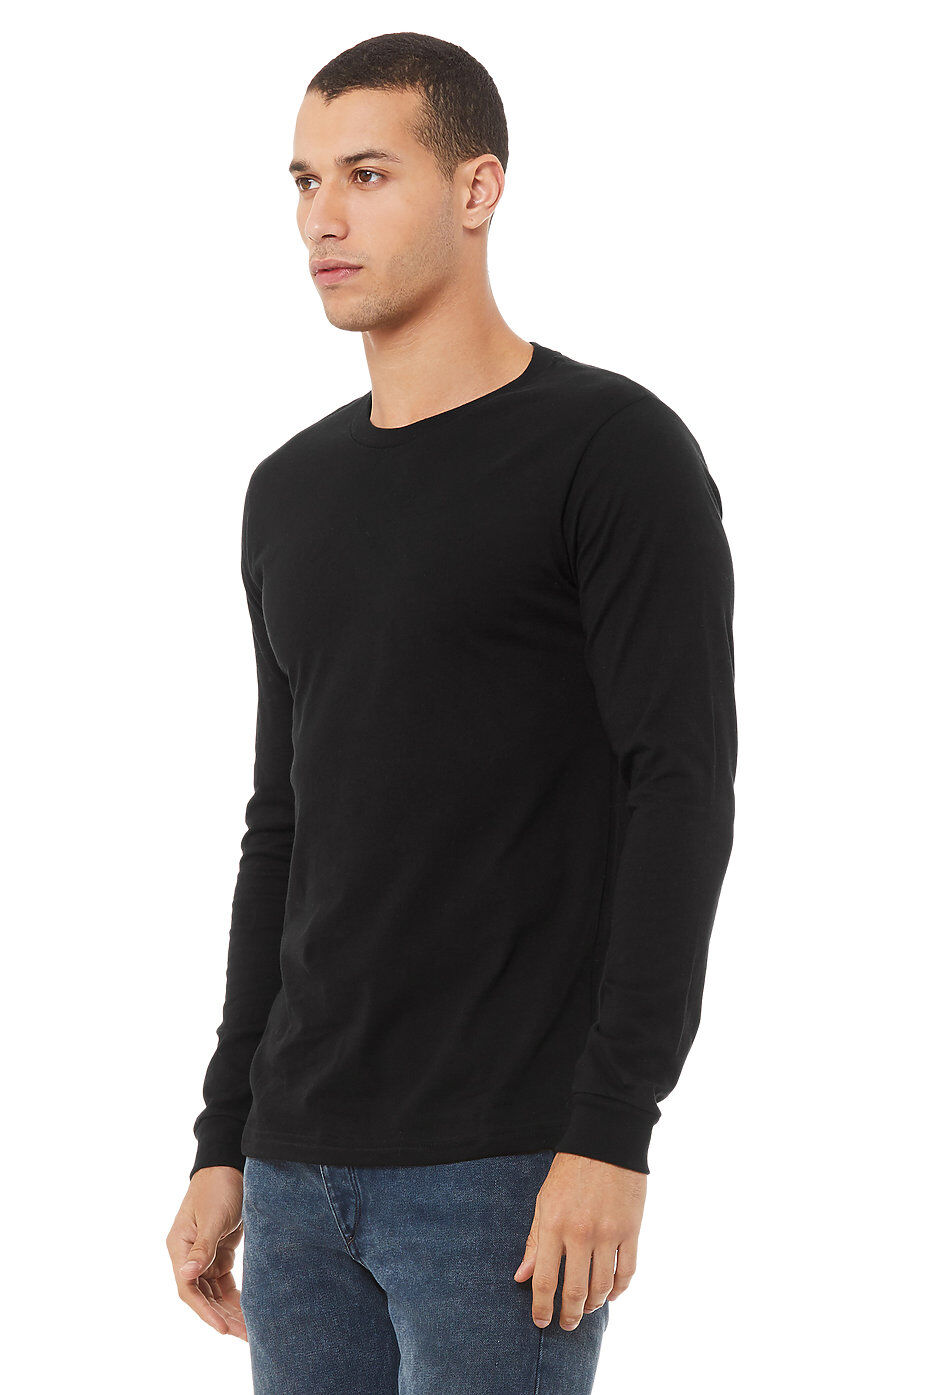 Custom Black Long Sleeve T-shirt Printing ⋆ Merch38